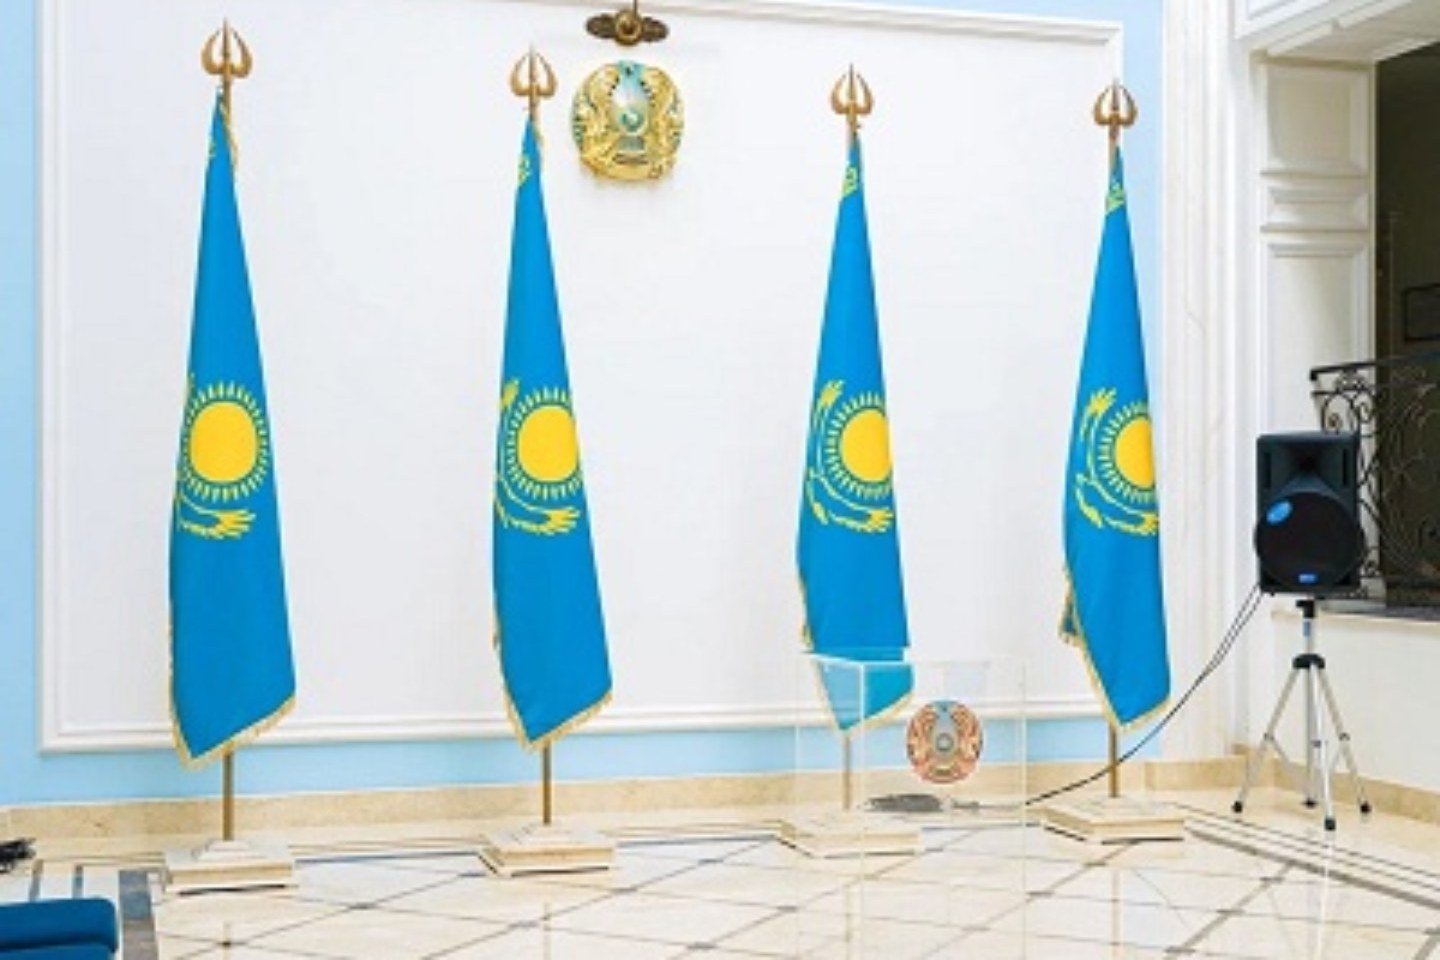 Новости мира / Политика в мире / Воздержитесь от посещения: посольство Казахстана в России предупреждает своих граждан